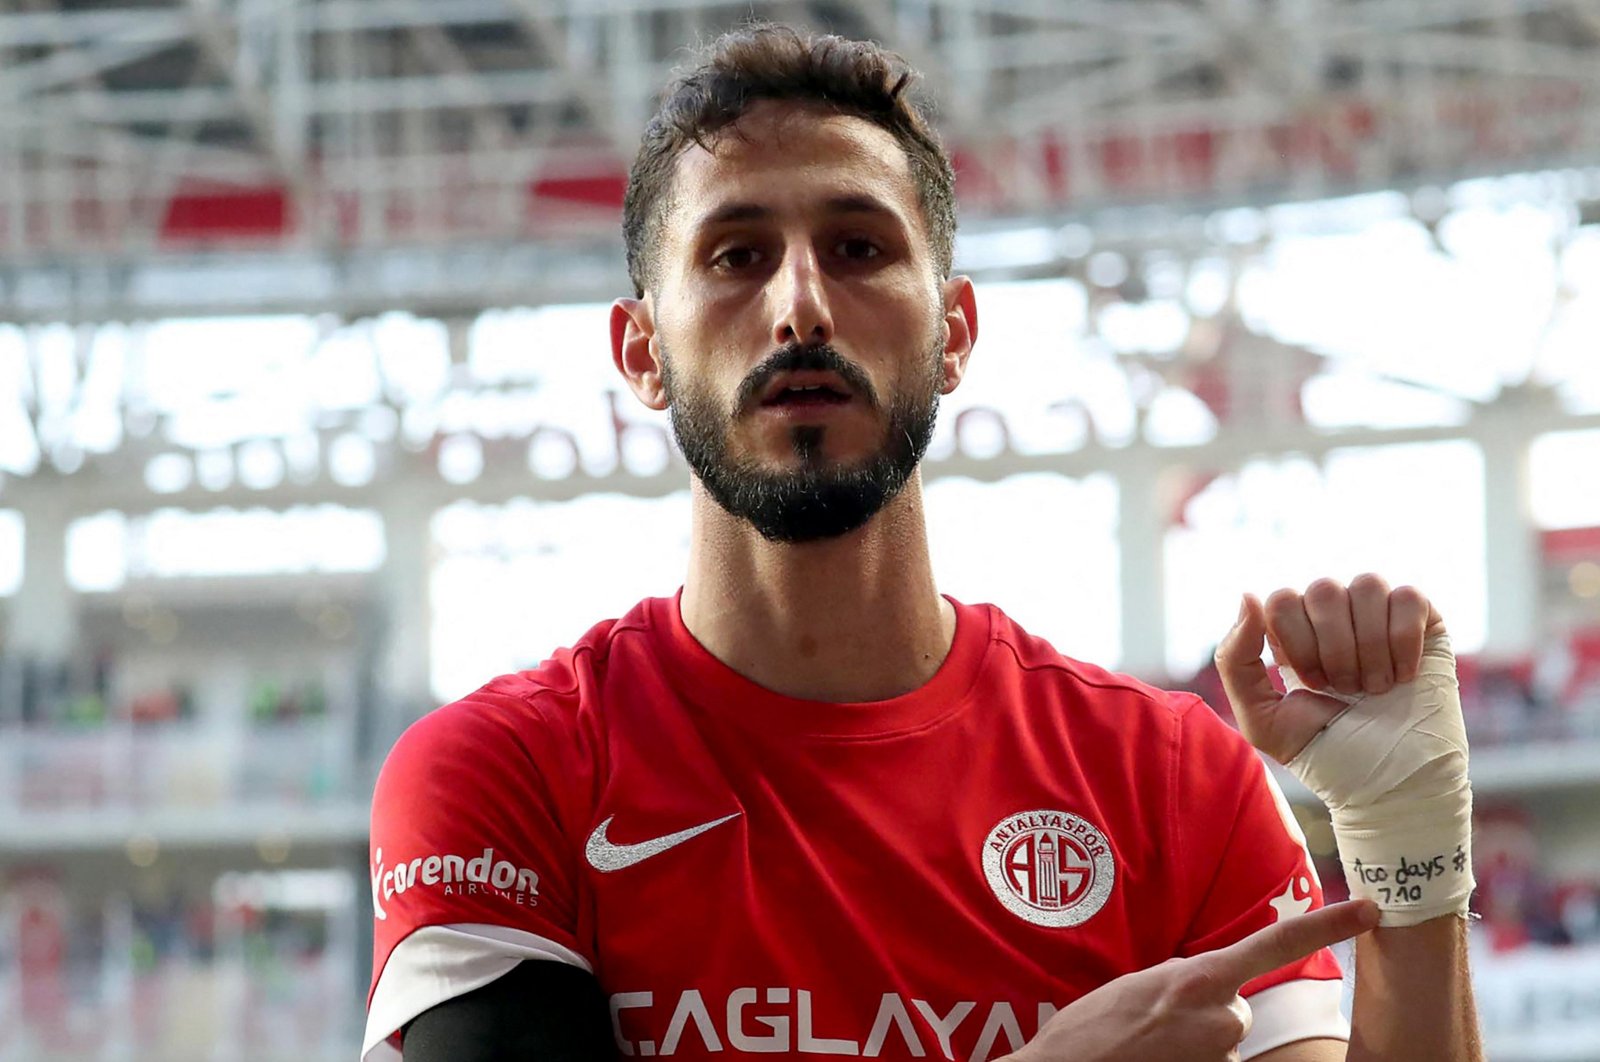 Israeli player leaves Türkiye after brief detention for ‘hate’ message